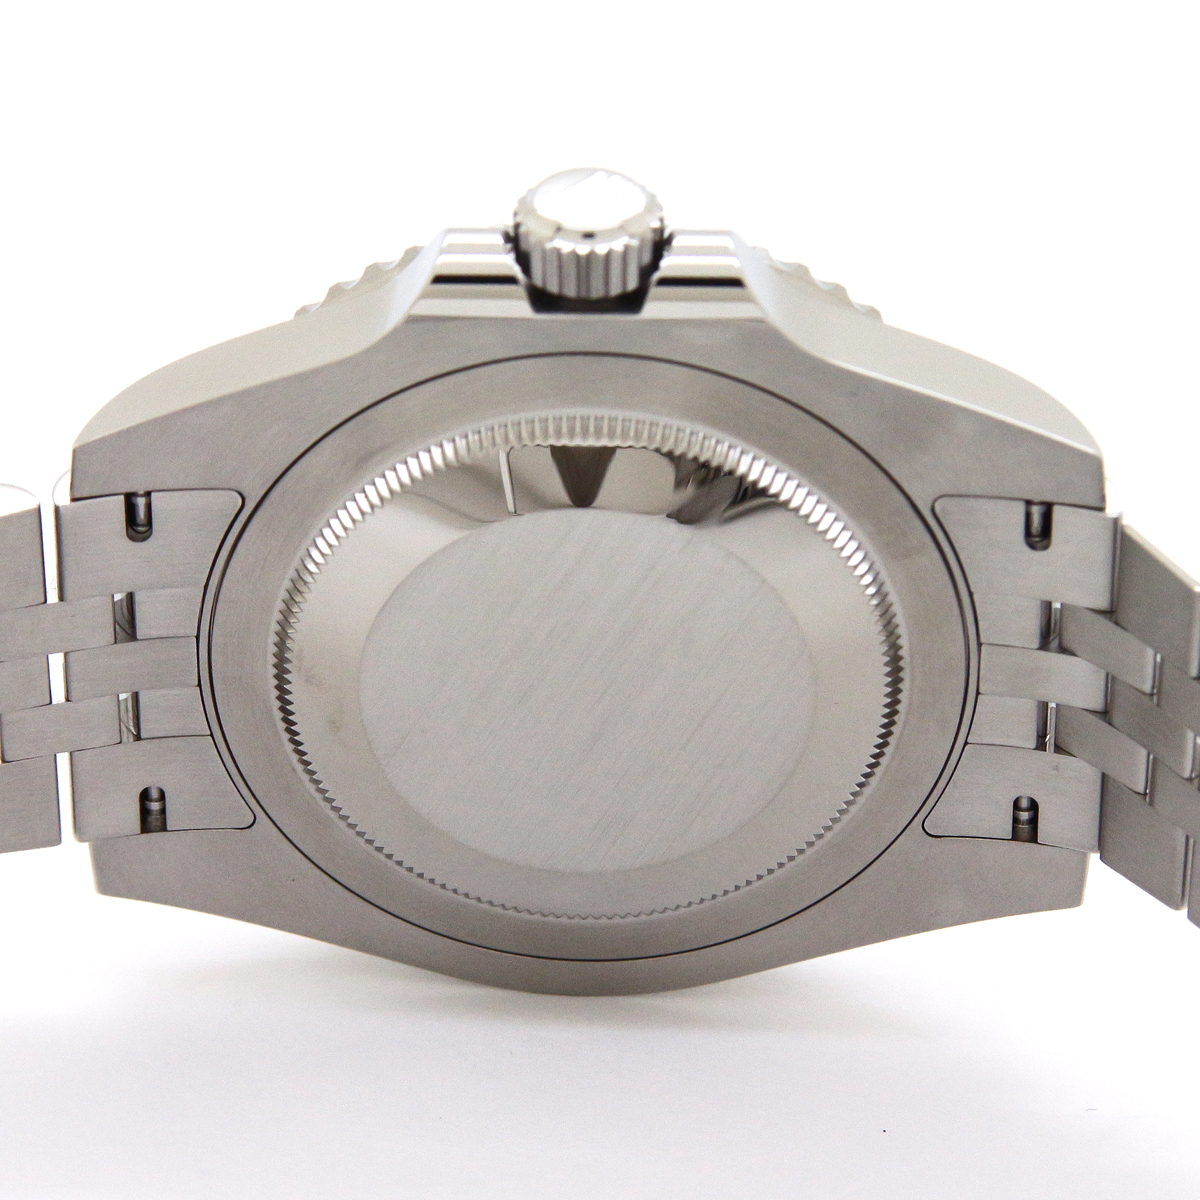 ロレックス（ROLEX）GMTマスターII 126710BLRO ペプシベゼル 2020年3月/ランダムシリアル メンズ 腕時計 未使用品_画像9